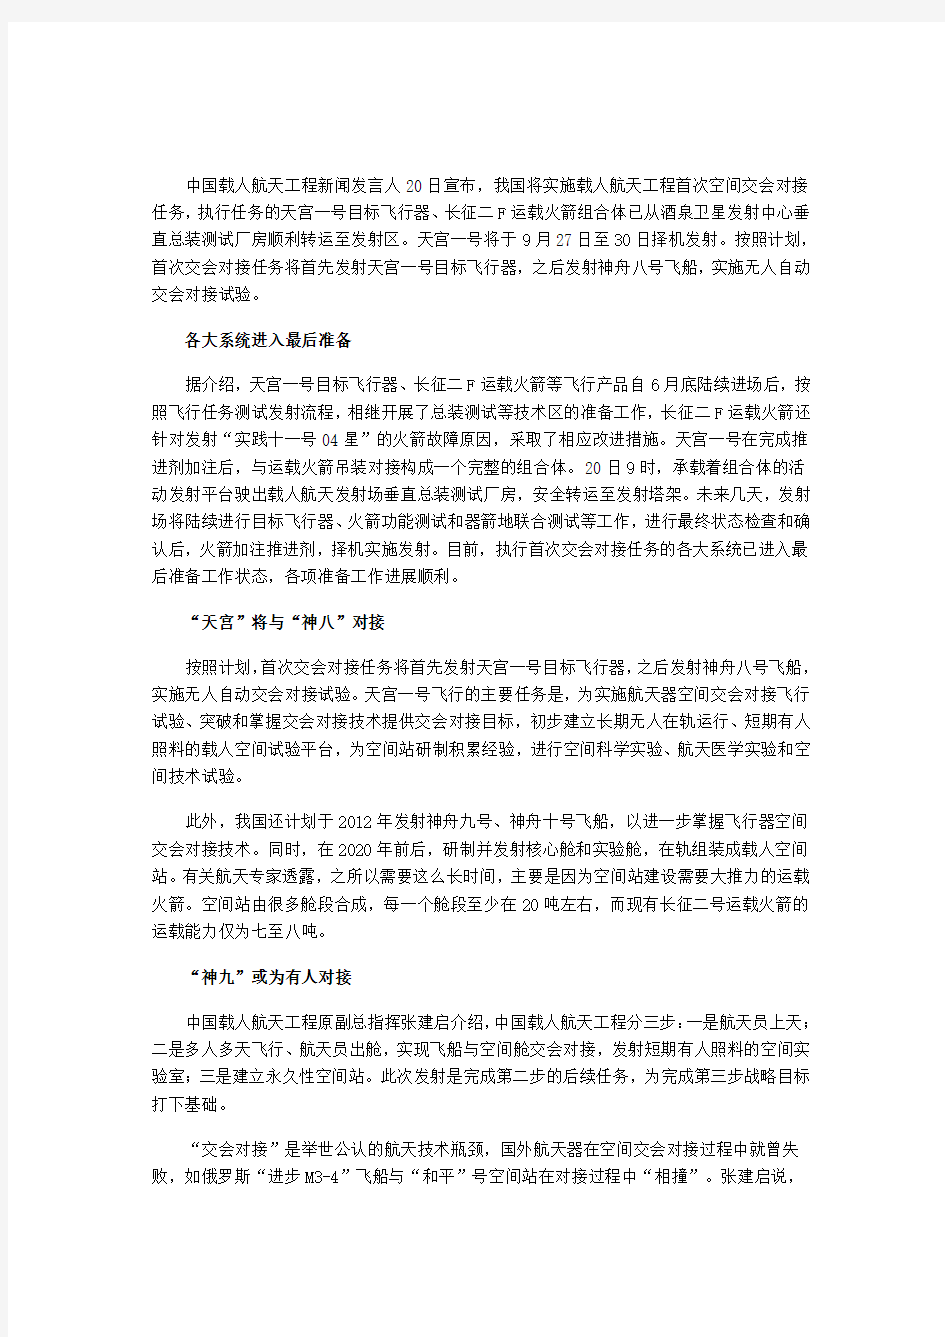 中国载人航天工程新闻发言人20日宣布